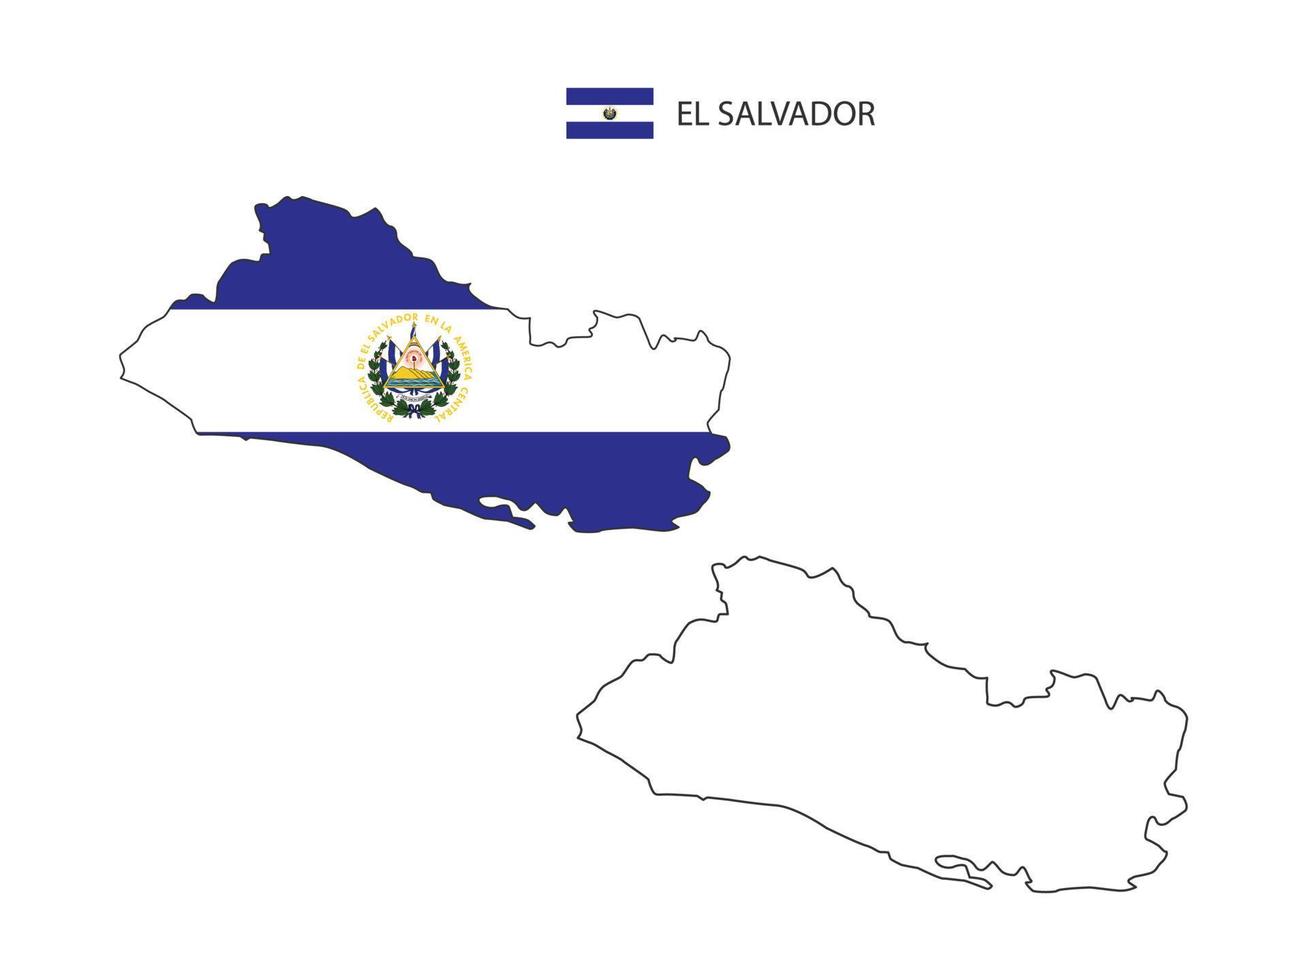 el Salvador kaart stad vector verdeeld door schets eenvoud stijl. hebben 2 versies, zwart dun lijn versie en kleur van land vlag versie. beide kaart waren Aan de wit achtergrond.